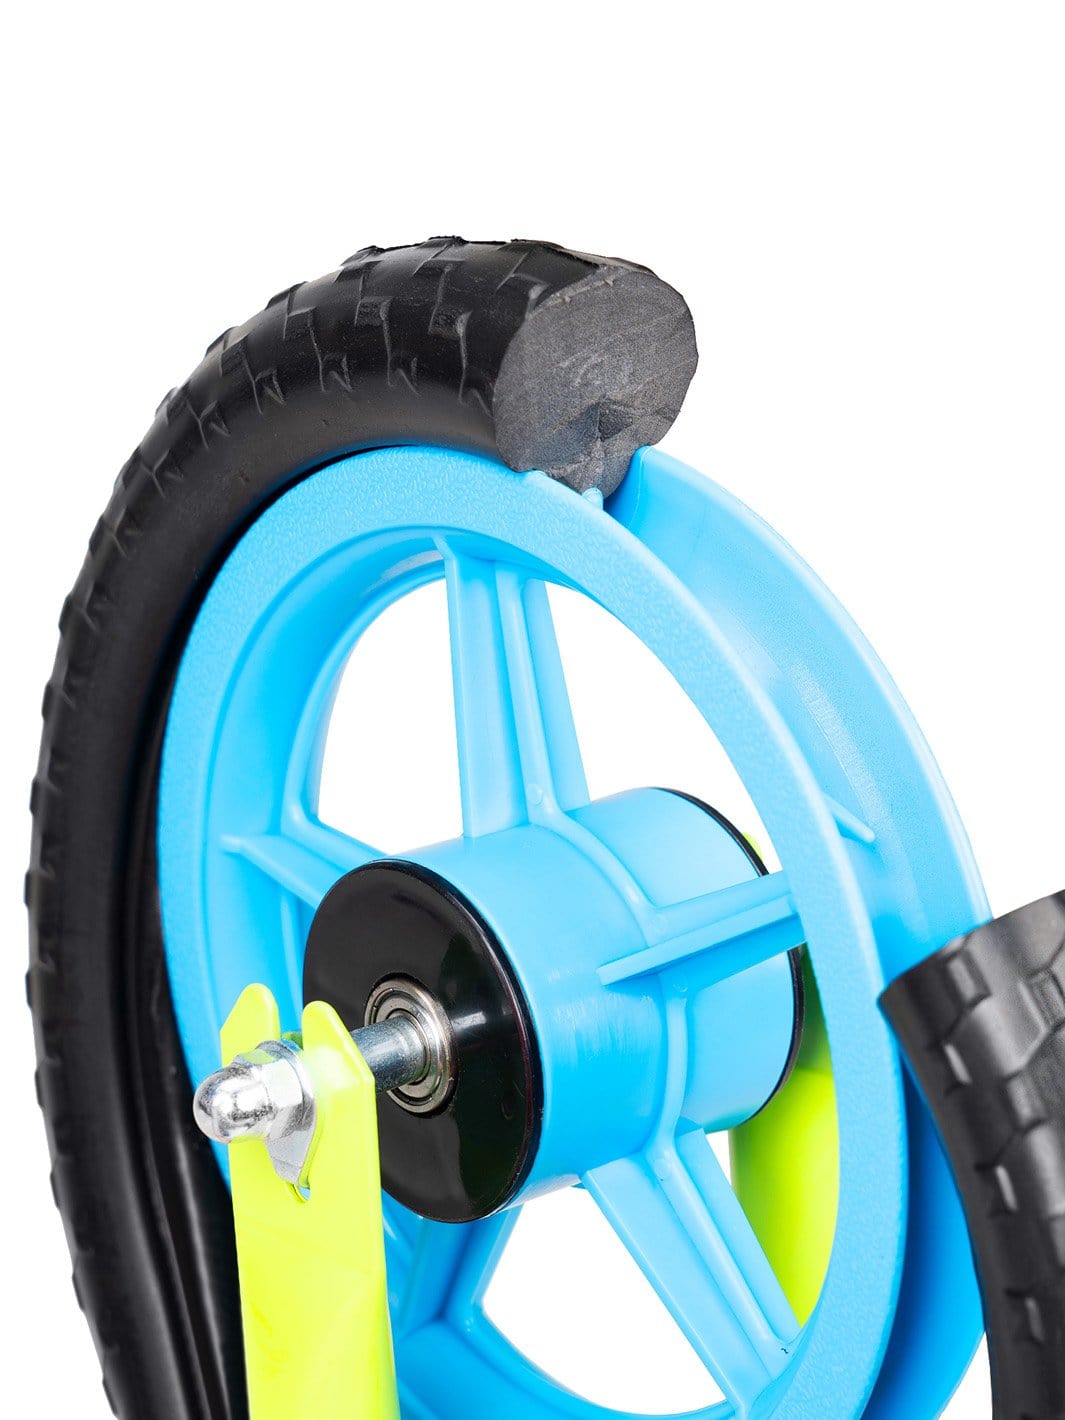 Zycom Zbike Zycomotion Balance Bike Strider Foot to Floor Boys Blue Green Madd Wheel